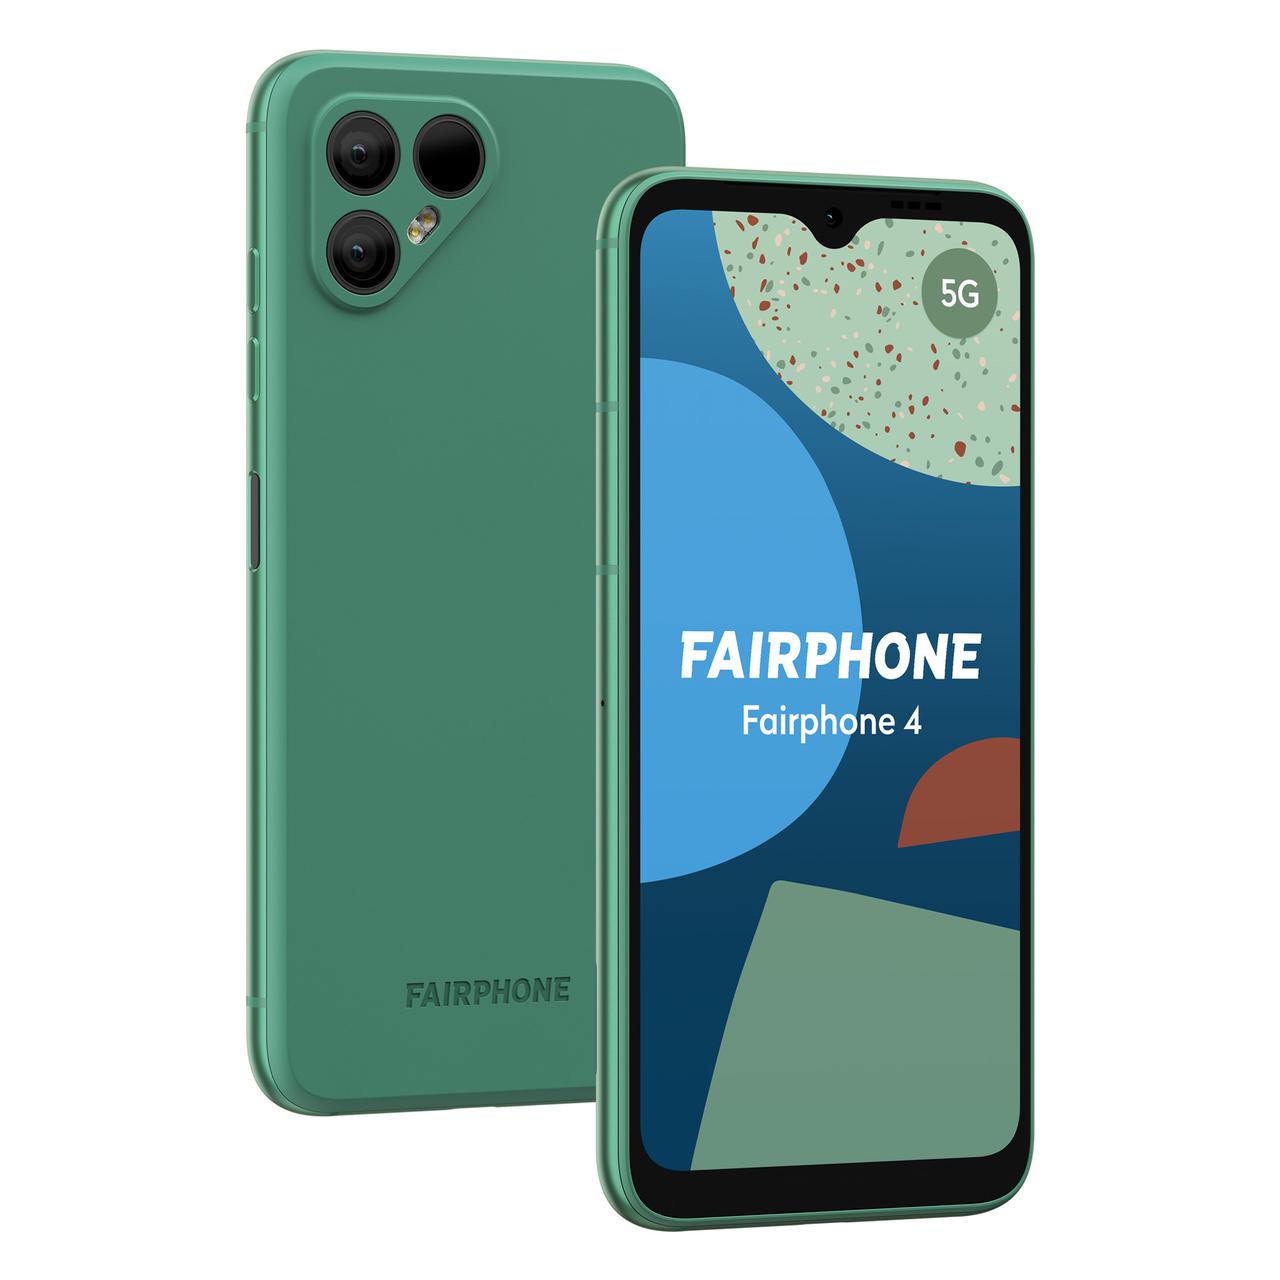 5G Speed Internet auf deinem neuen Fairphone4 in grün